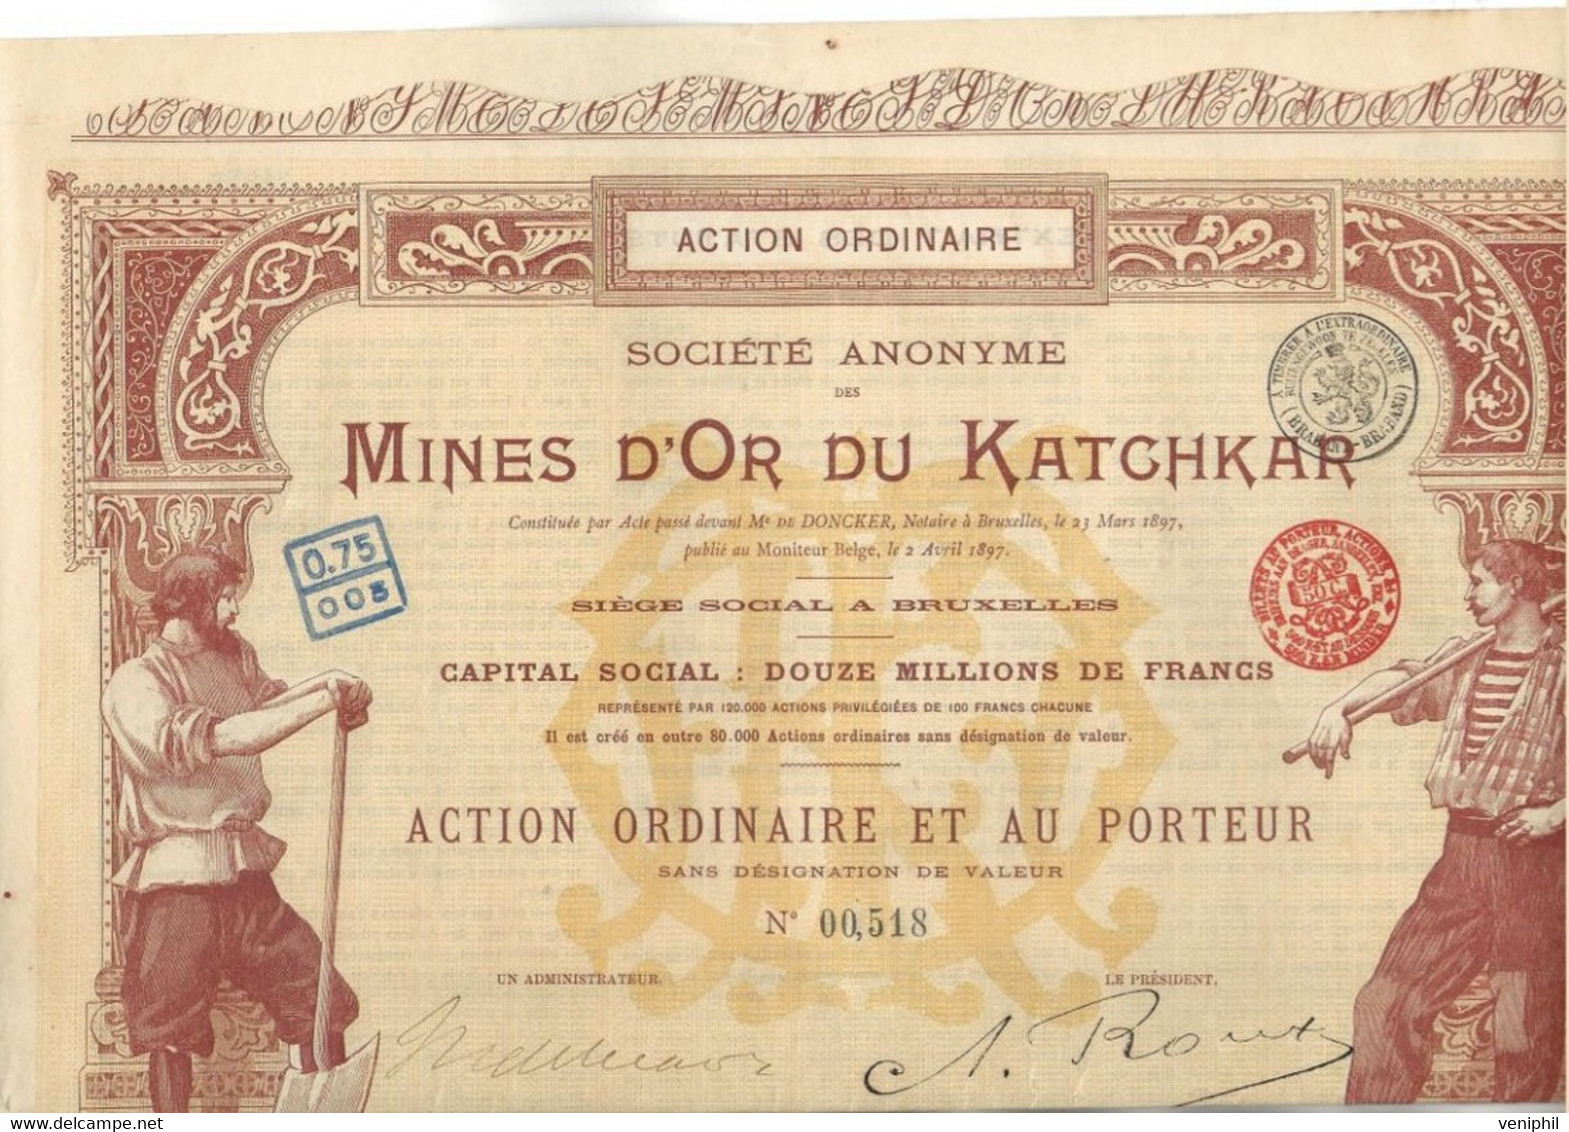 MINES D'OR DU KATCHKAR (ARMENIE RUSSIE ) TITRE DE CINQ ACTIONS ORDINAIRES -ANNEE 1897 - Mineral